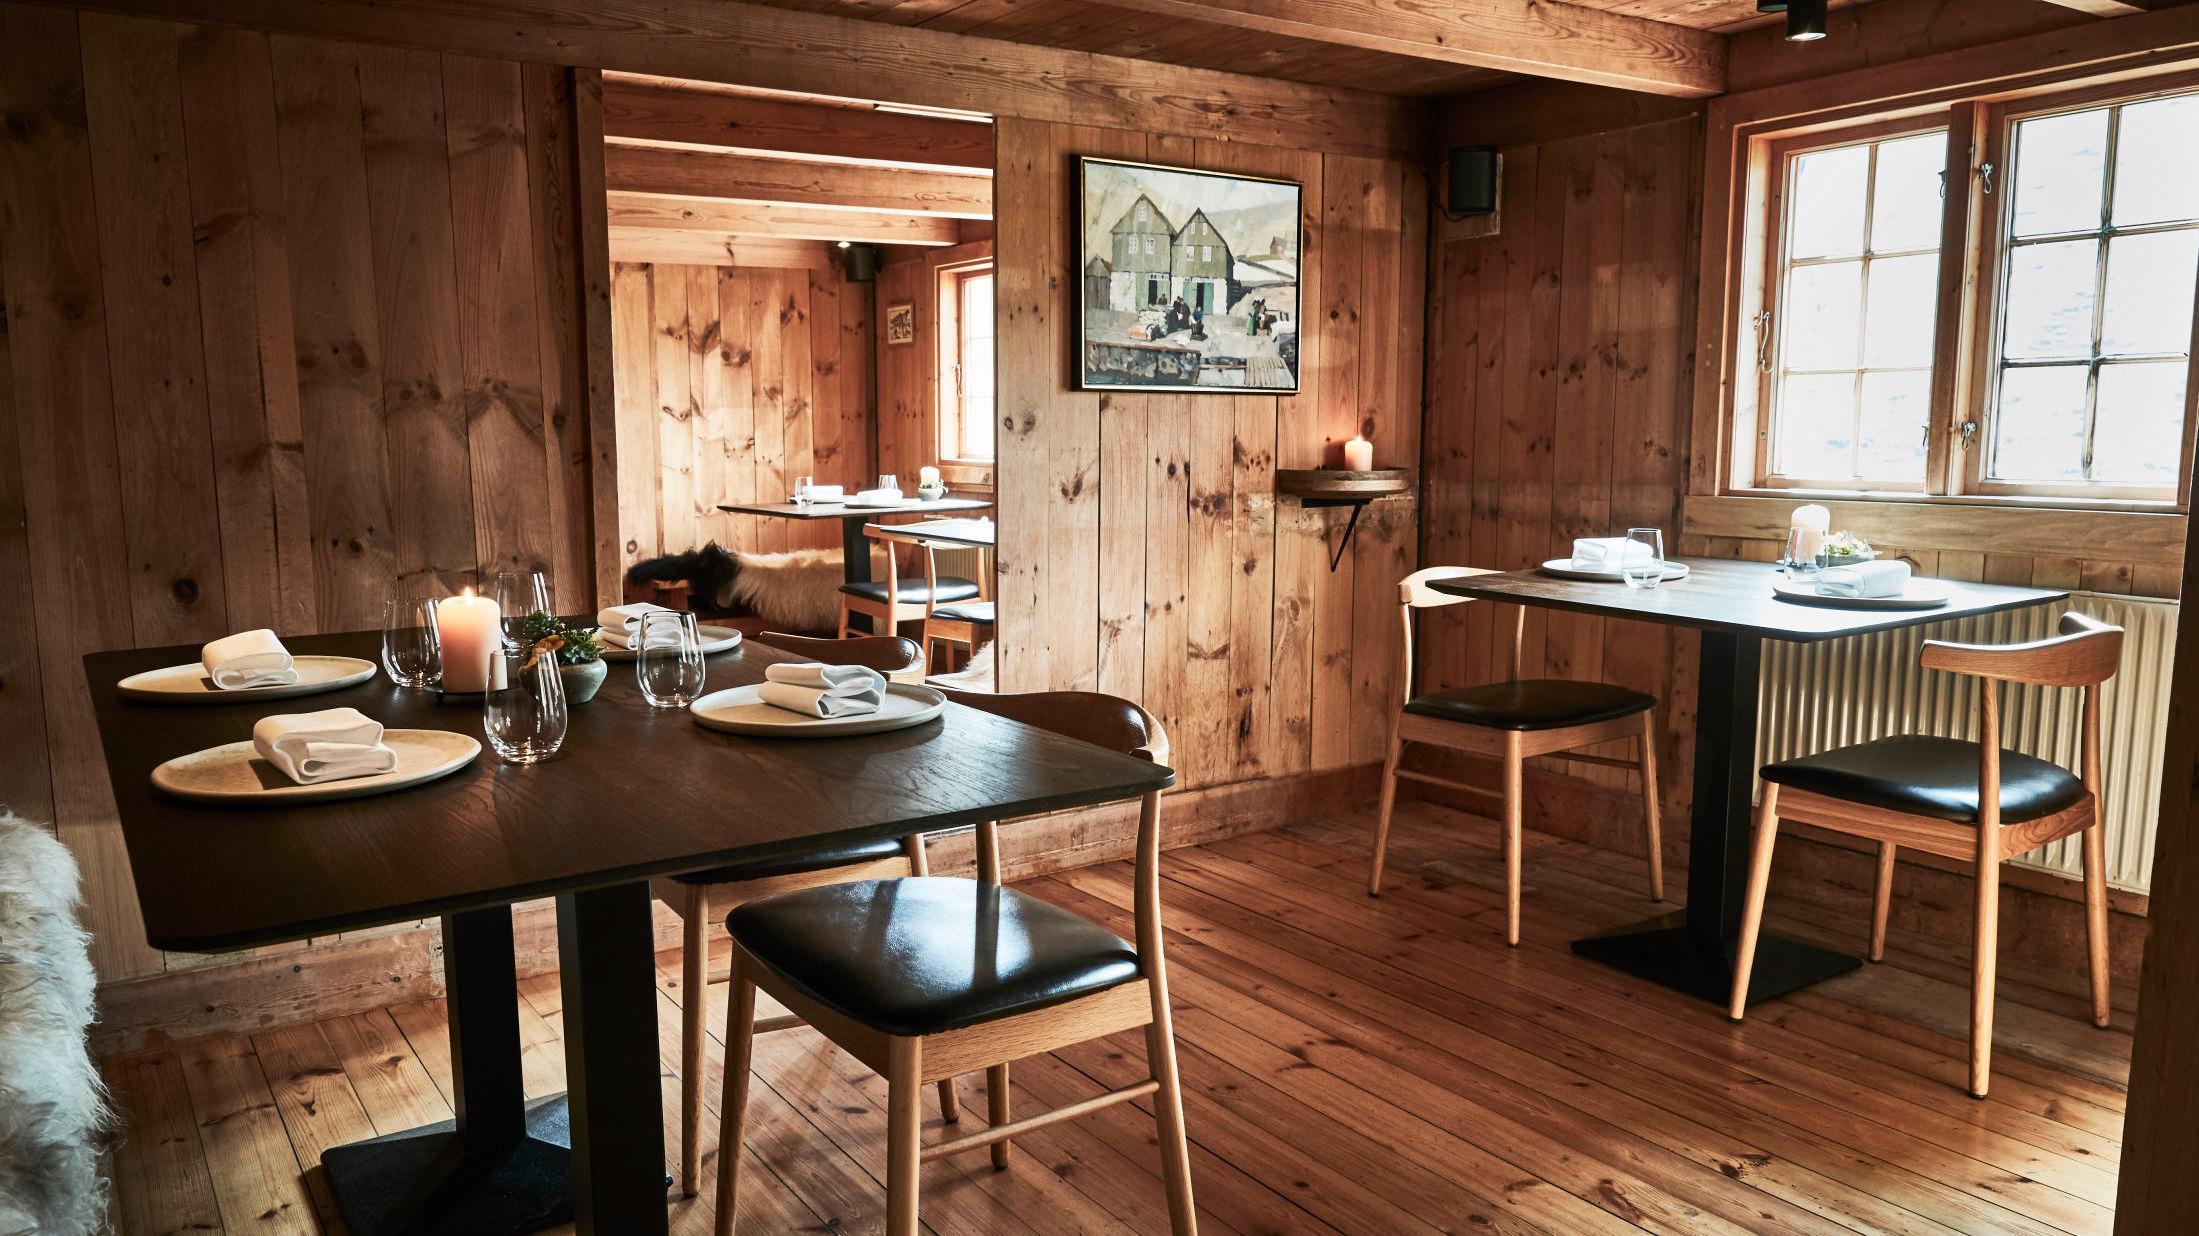 RESTAURANTSENSASJON: Restaurant Koks minner mest om en hytte i ingenmannsland, men kan skilte med to stjerner i Michelin-guiden.  Foto: Claes Bech-Poulsen/Koks